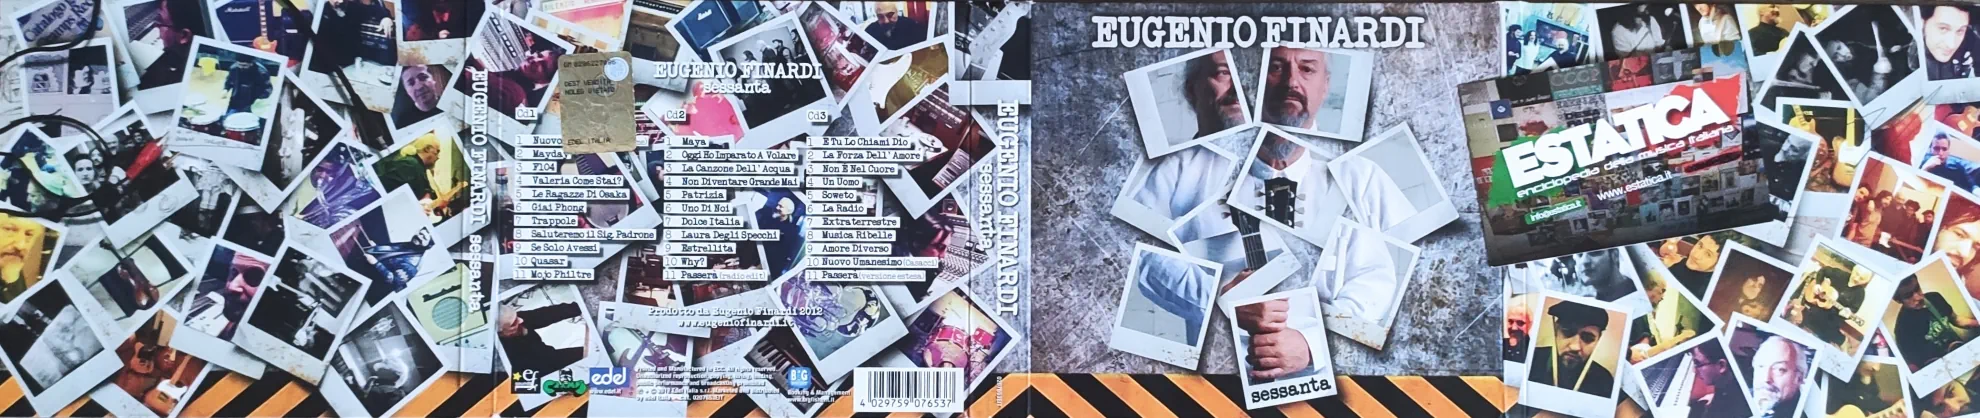 Album Eugenio Finardi - Sessanta